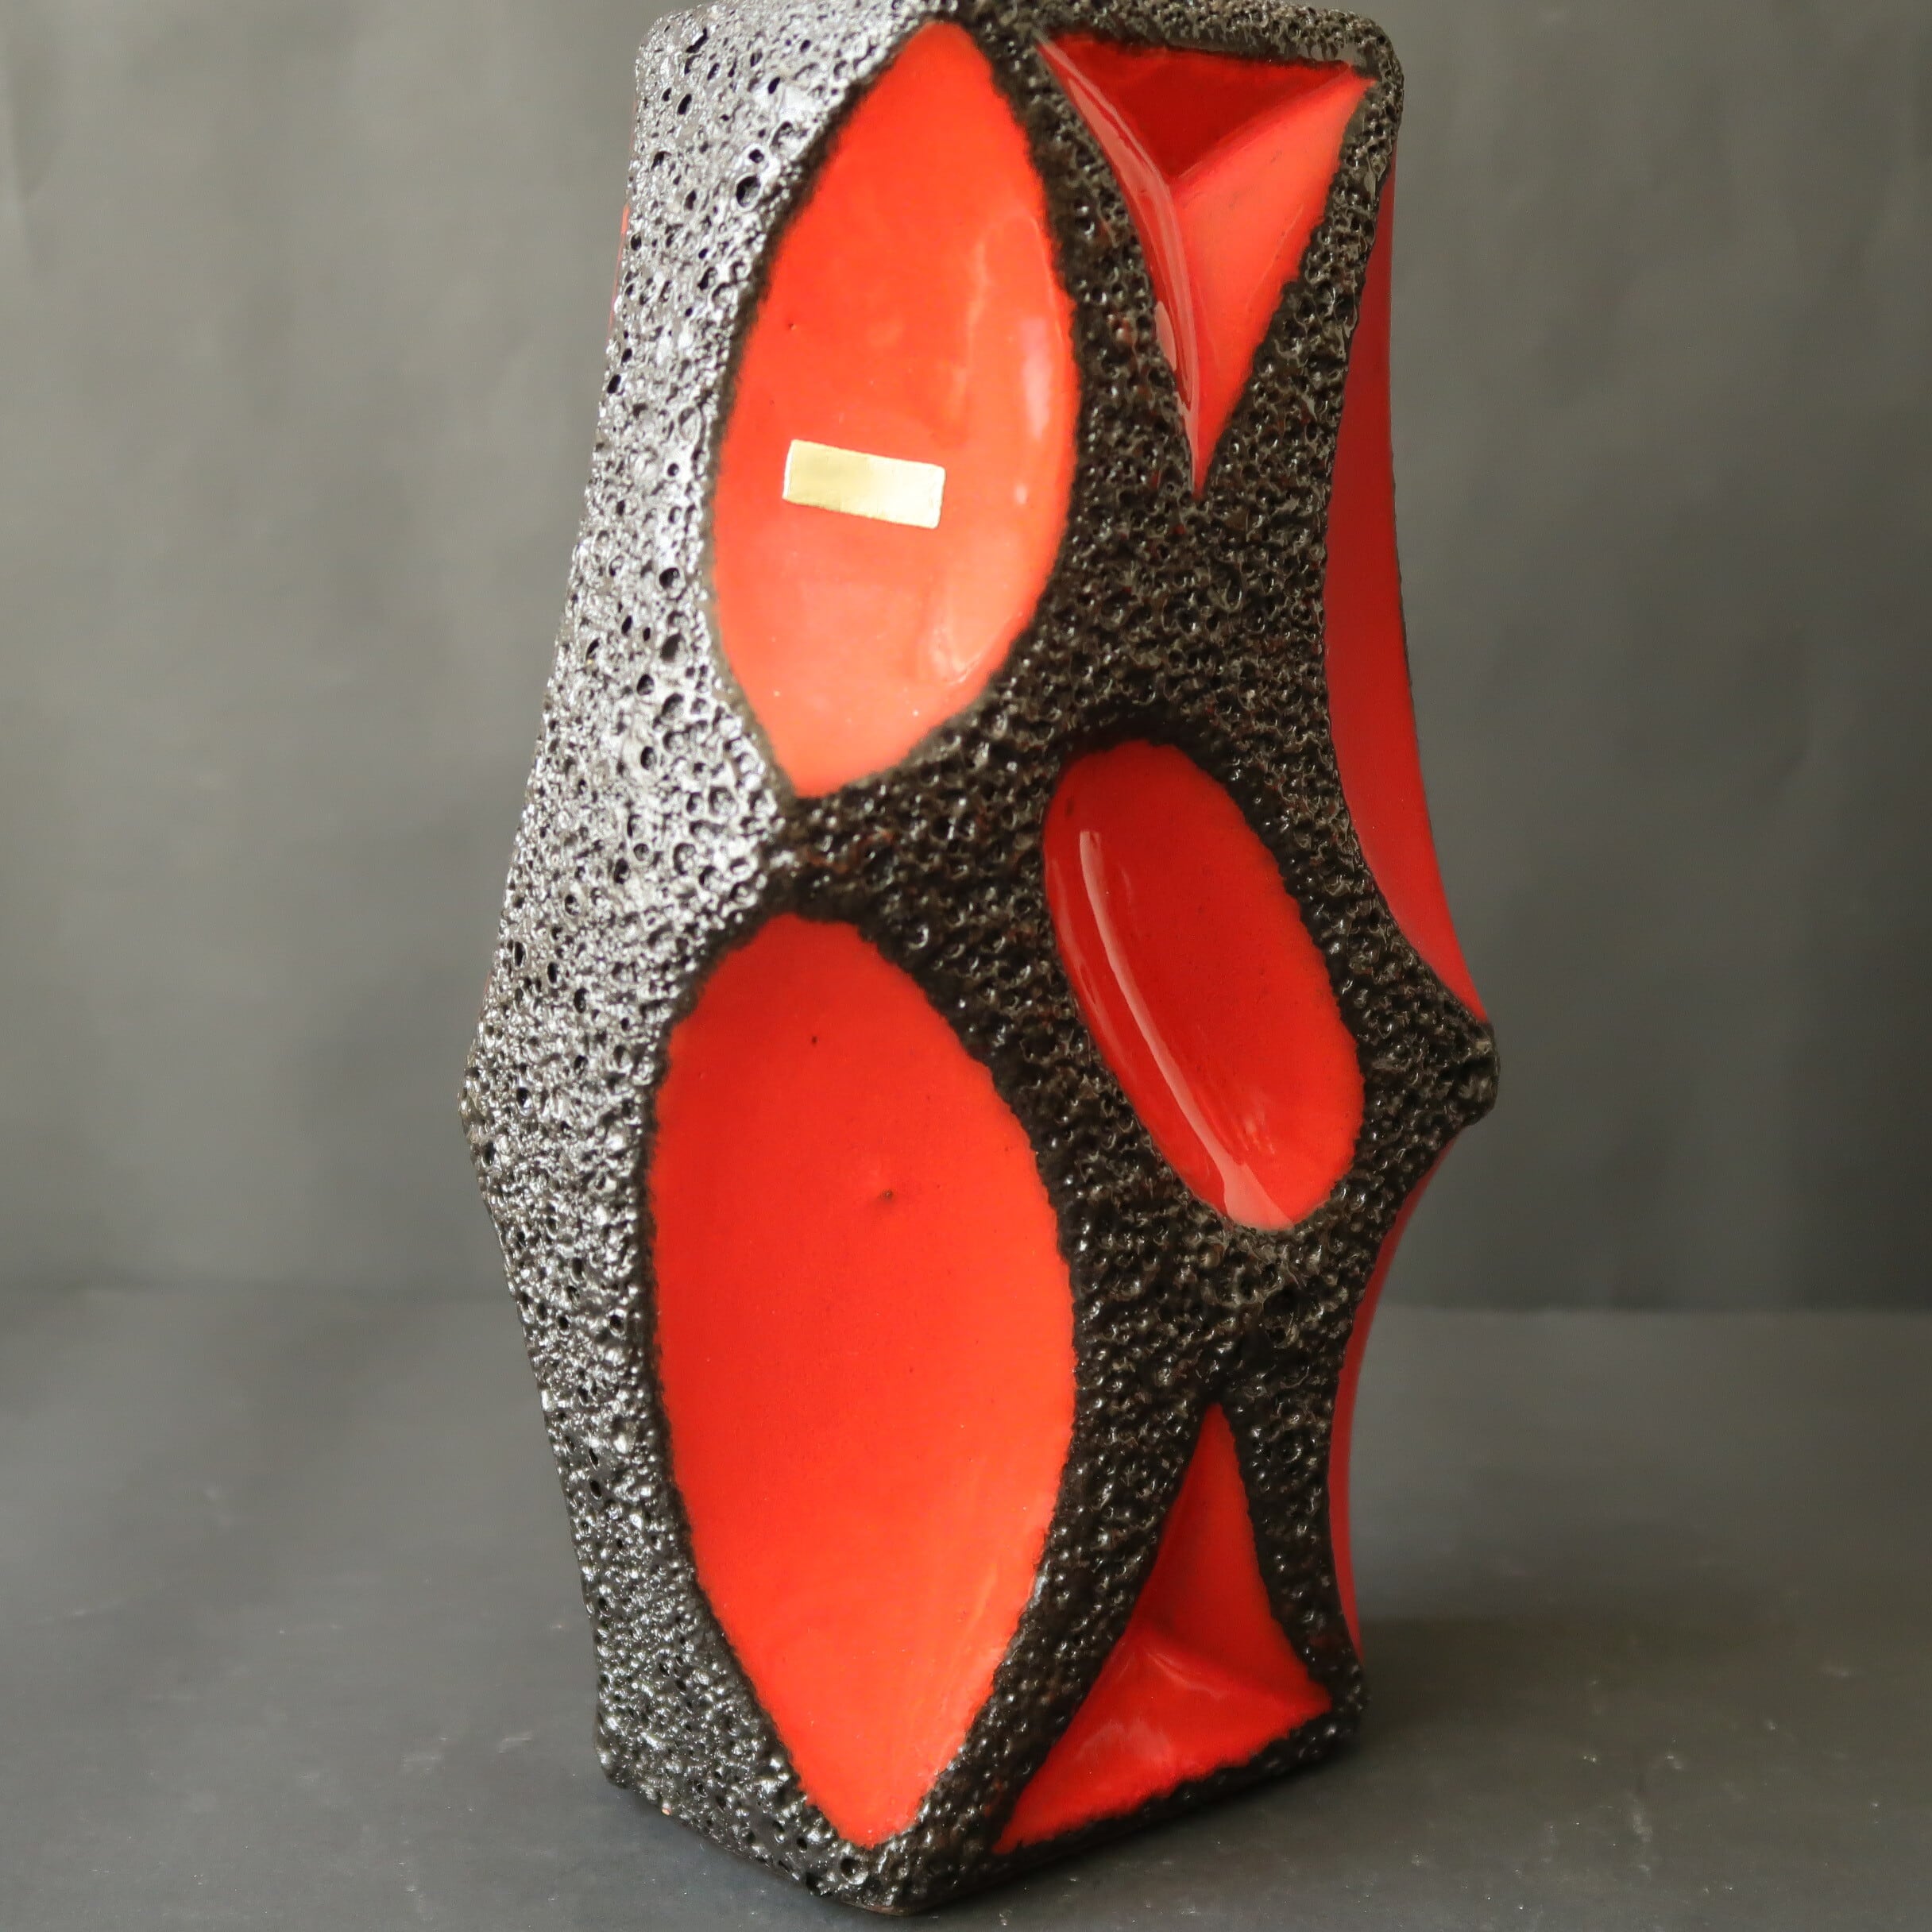 Fat Lava--Roth keramik-- | Fat Lava and German Art Pottery-kiis-